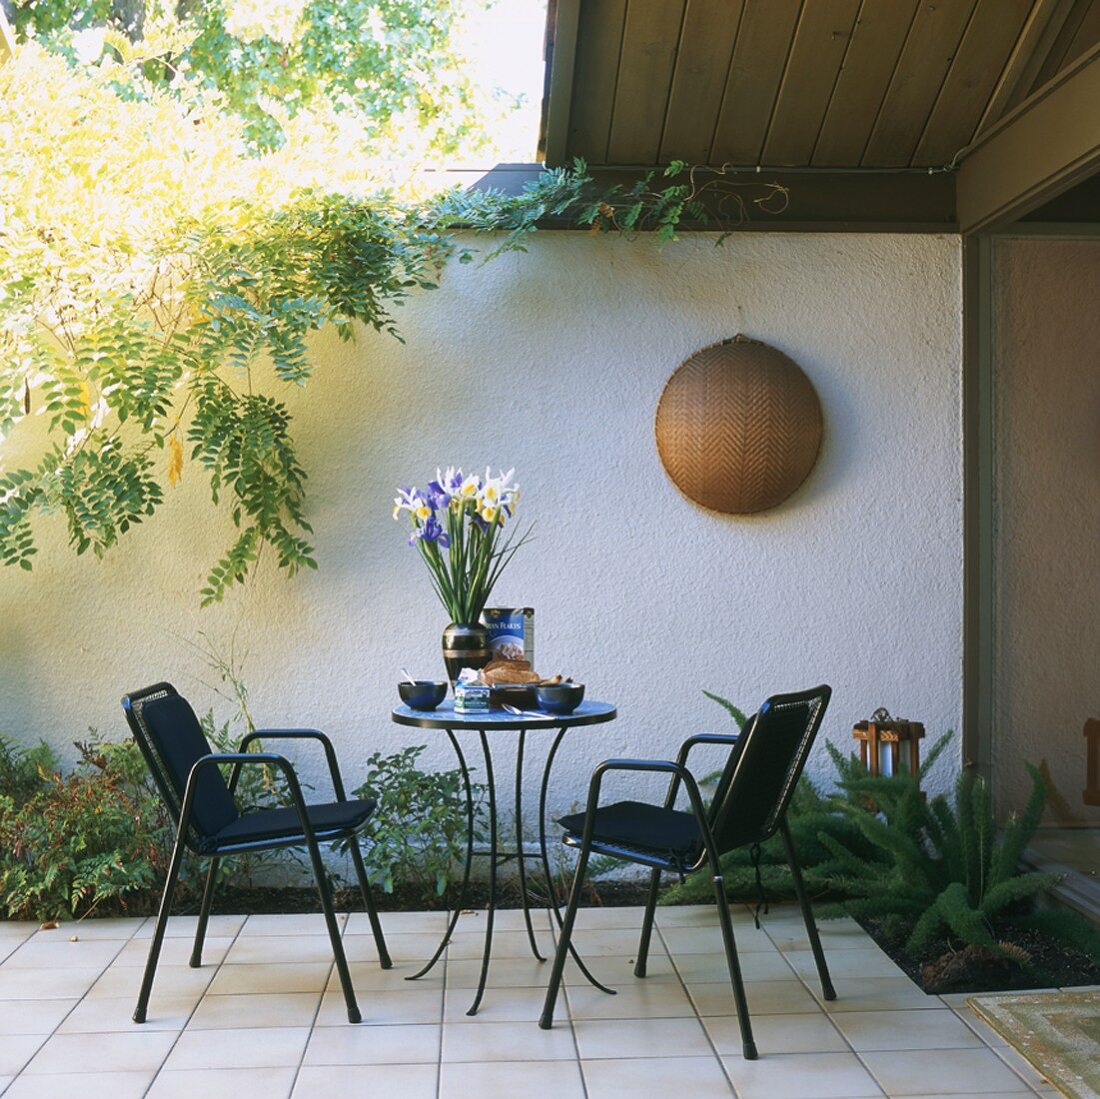 Terrasse mit rundem Tisch und Stühle vor weisser Wand